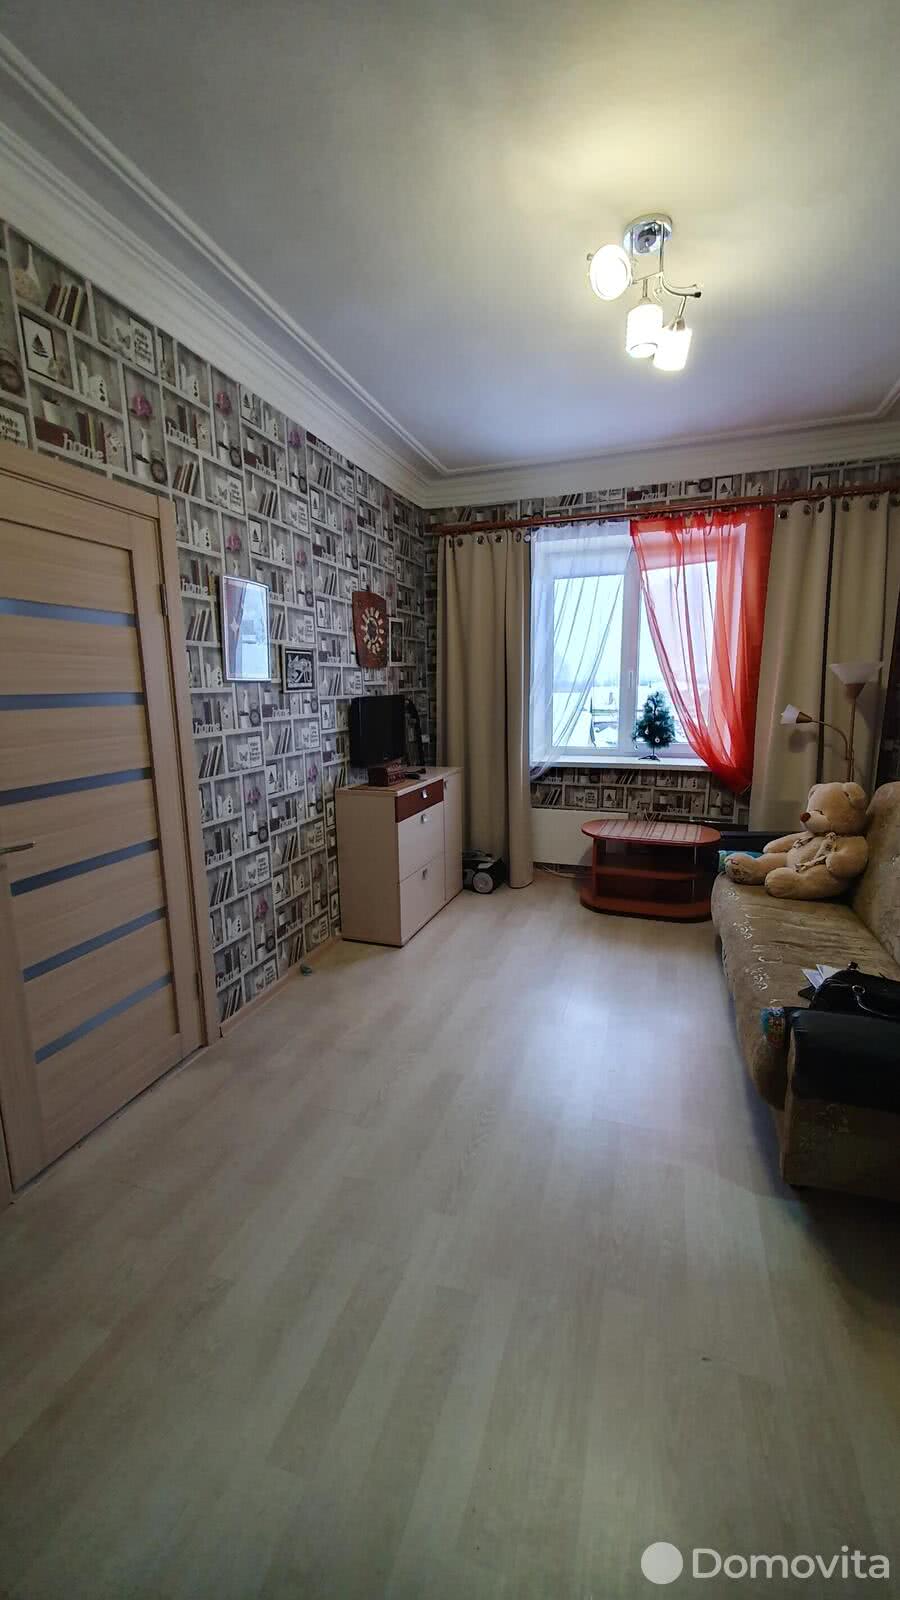 Цена продажи квартиры, Борисов, ул. Черняховского, д. 2а